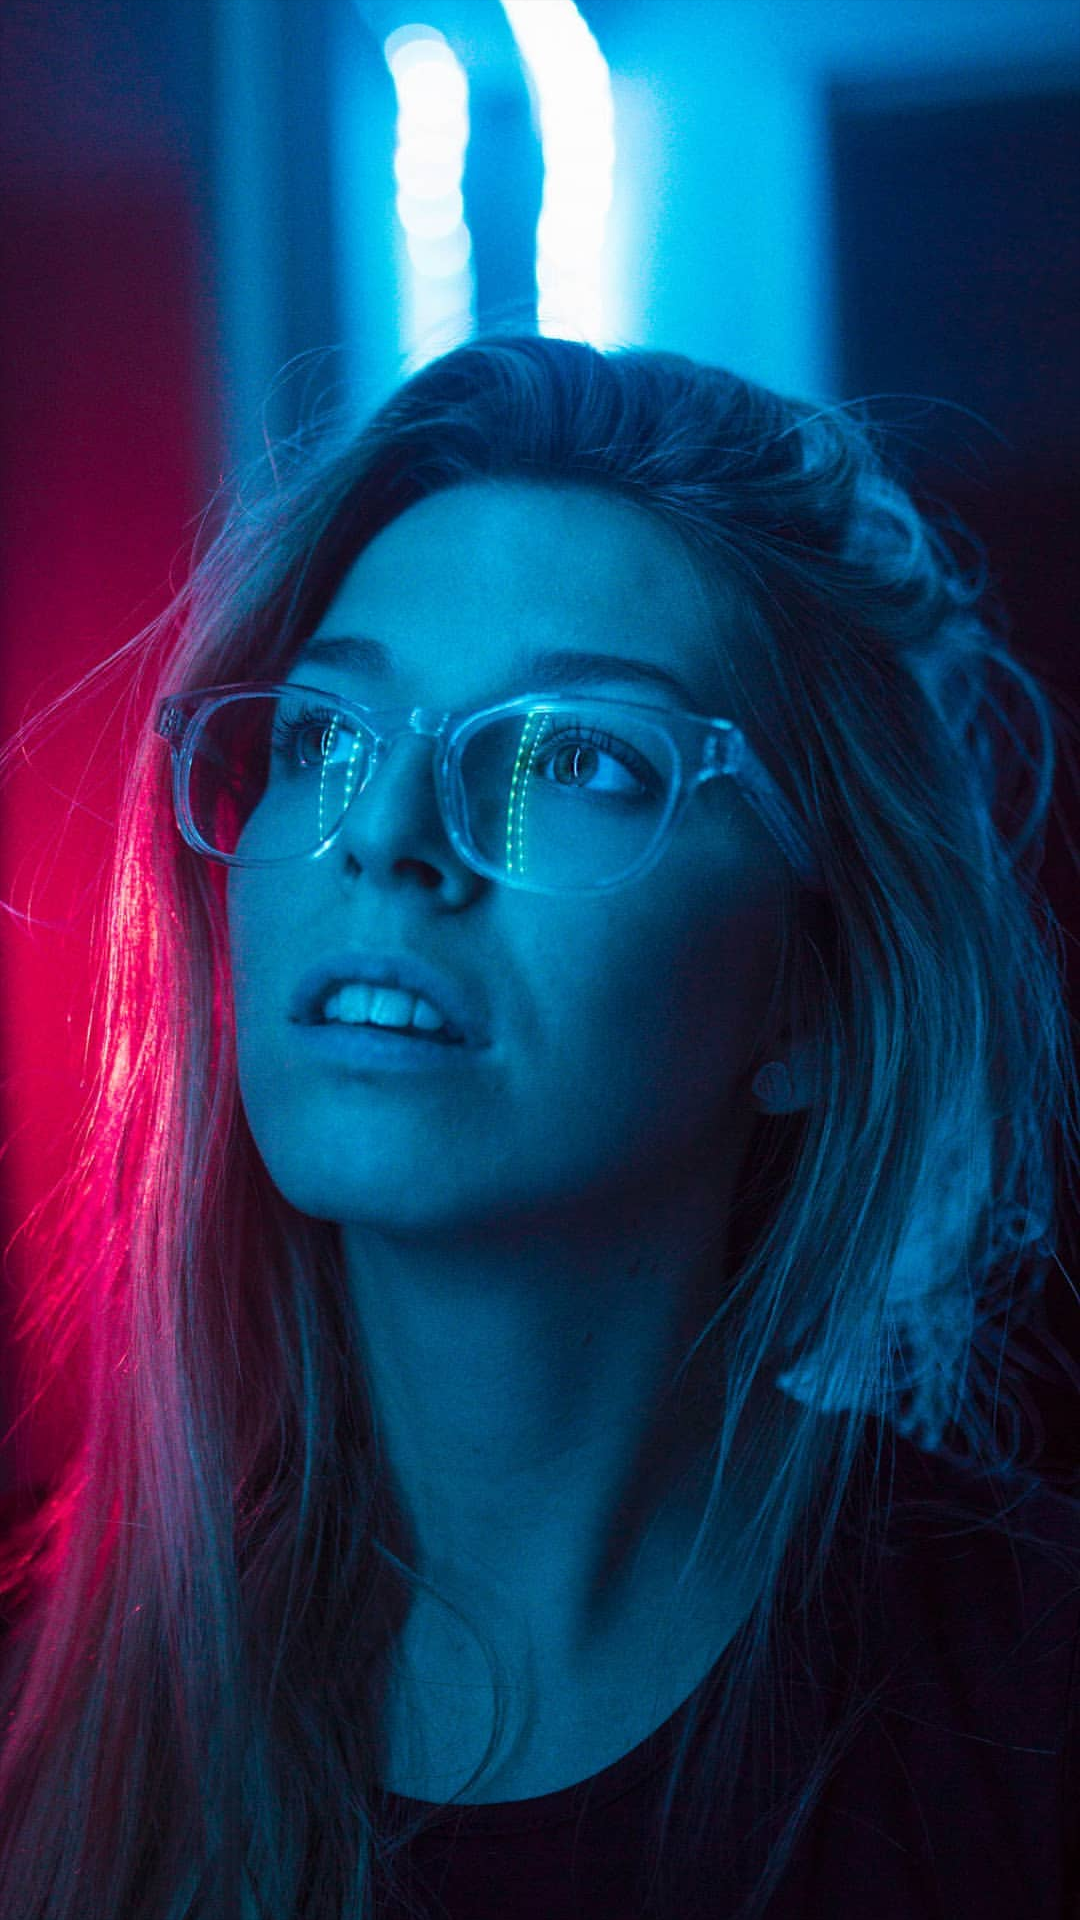 Girl In Neon - HD Wallpaper 